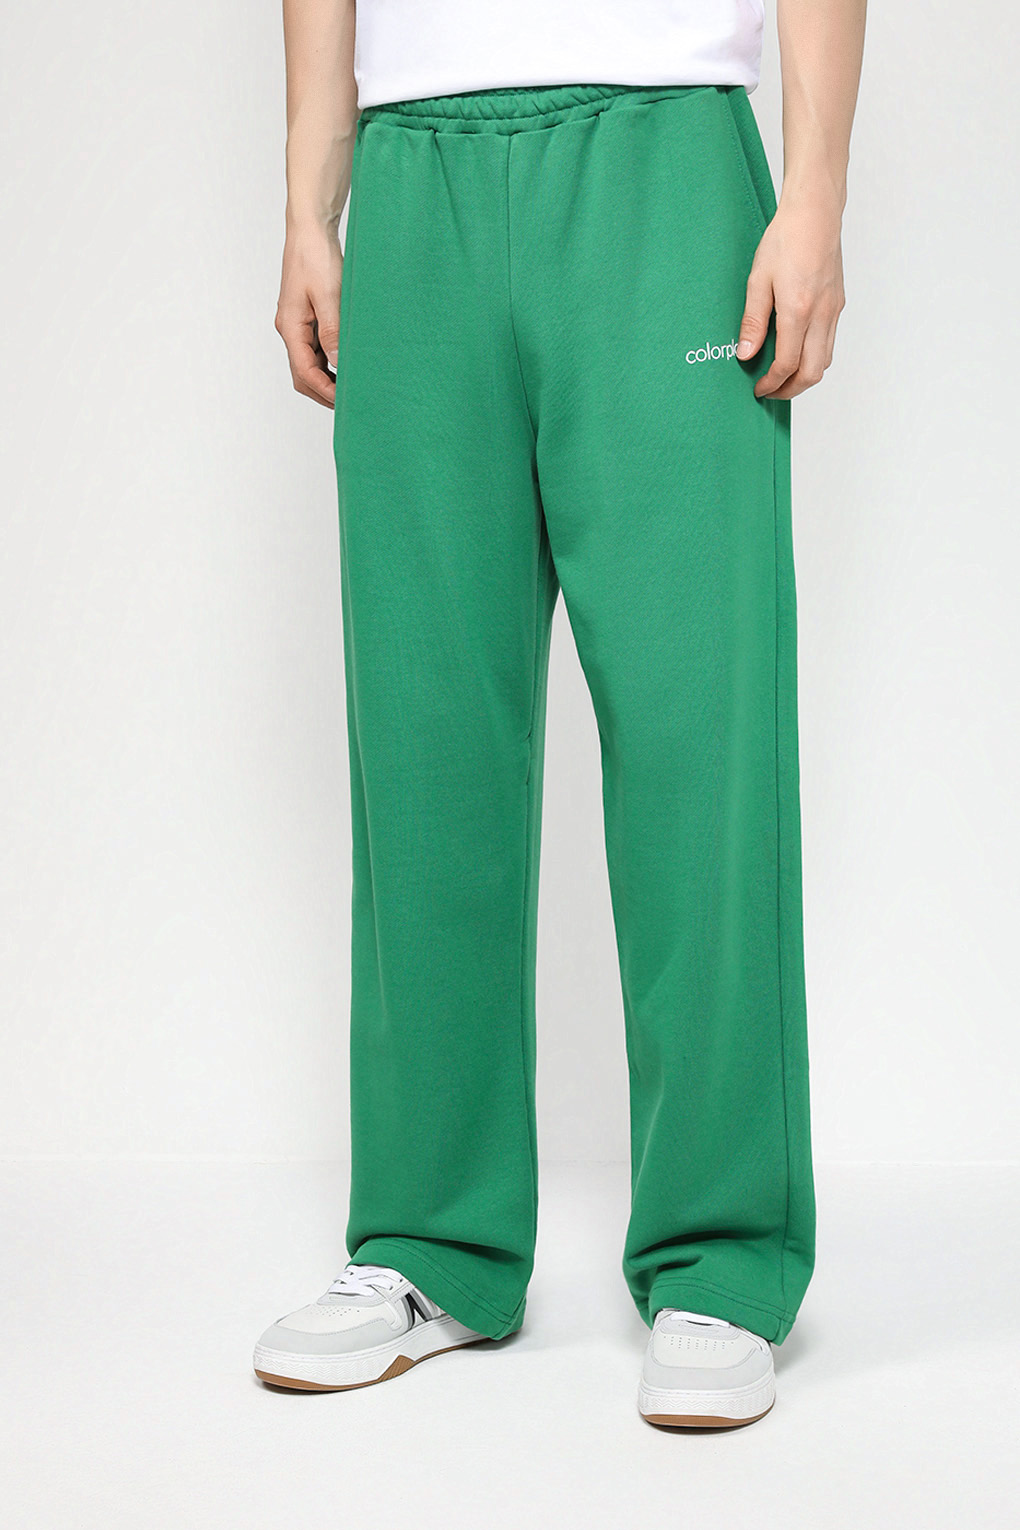 Спортивные брюки мужские COLORPLAY CP23072306-004 зеленые XL